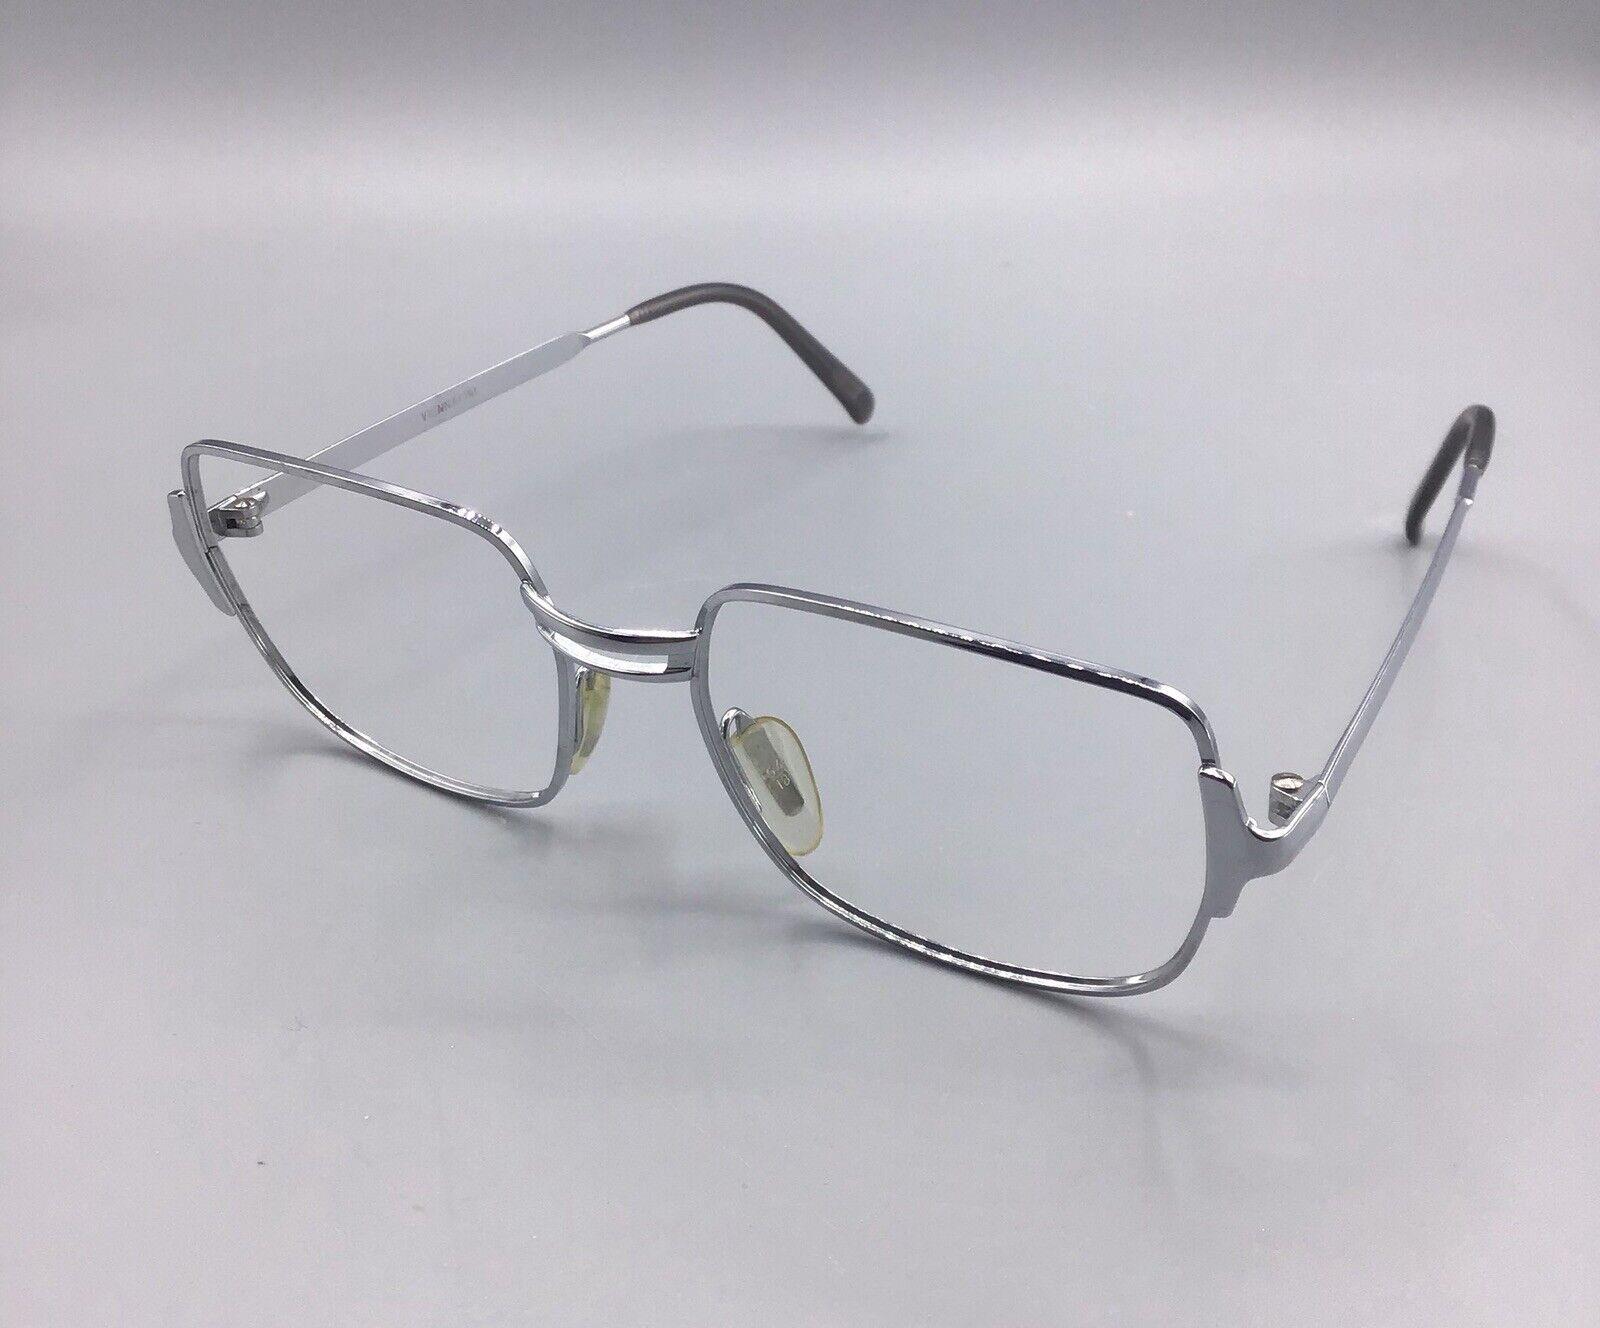 viennaLine occhiale vintage eyewear frame Austria brillen lunettes silver